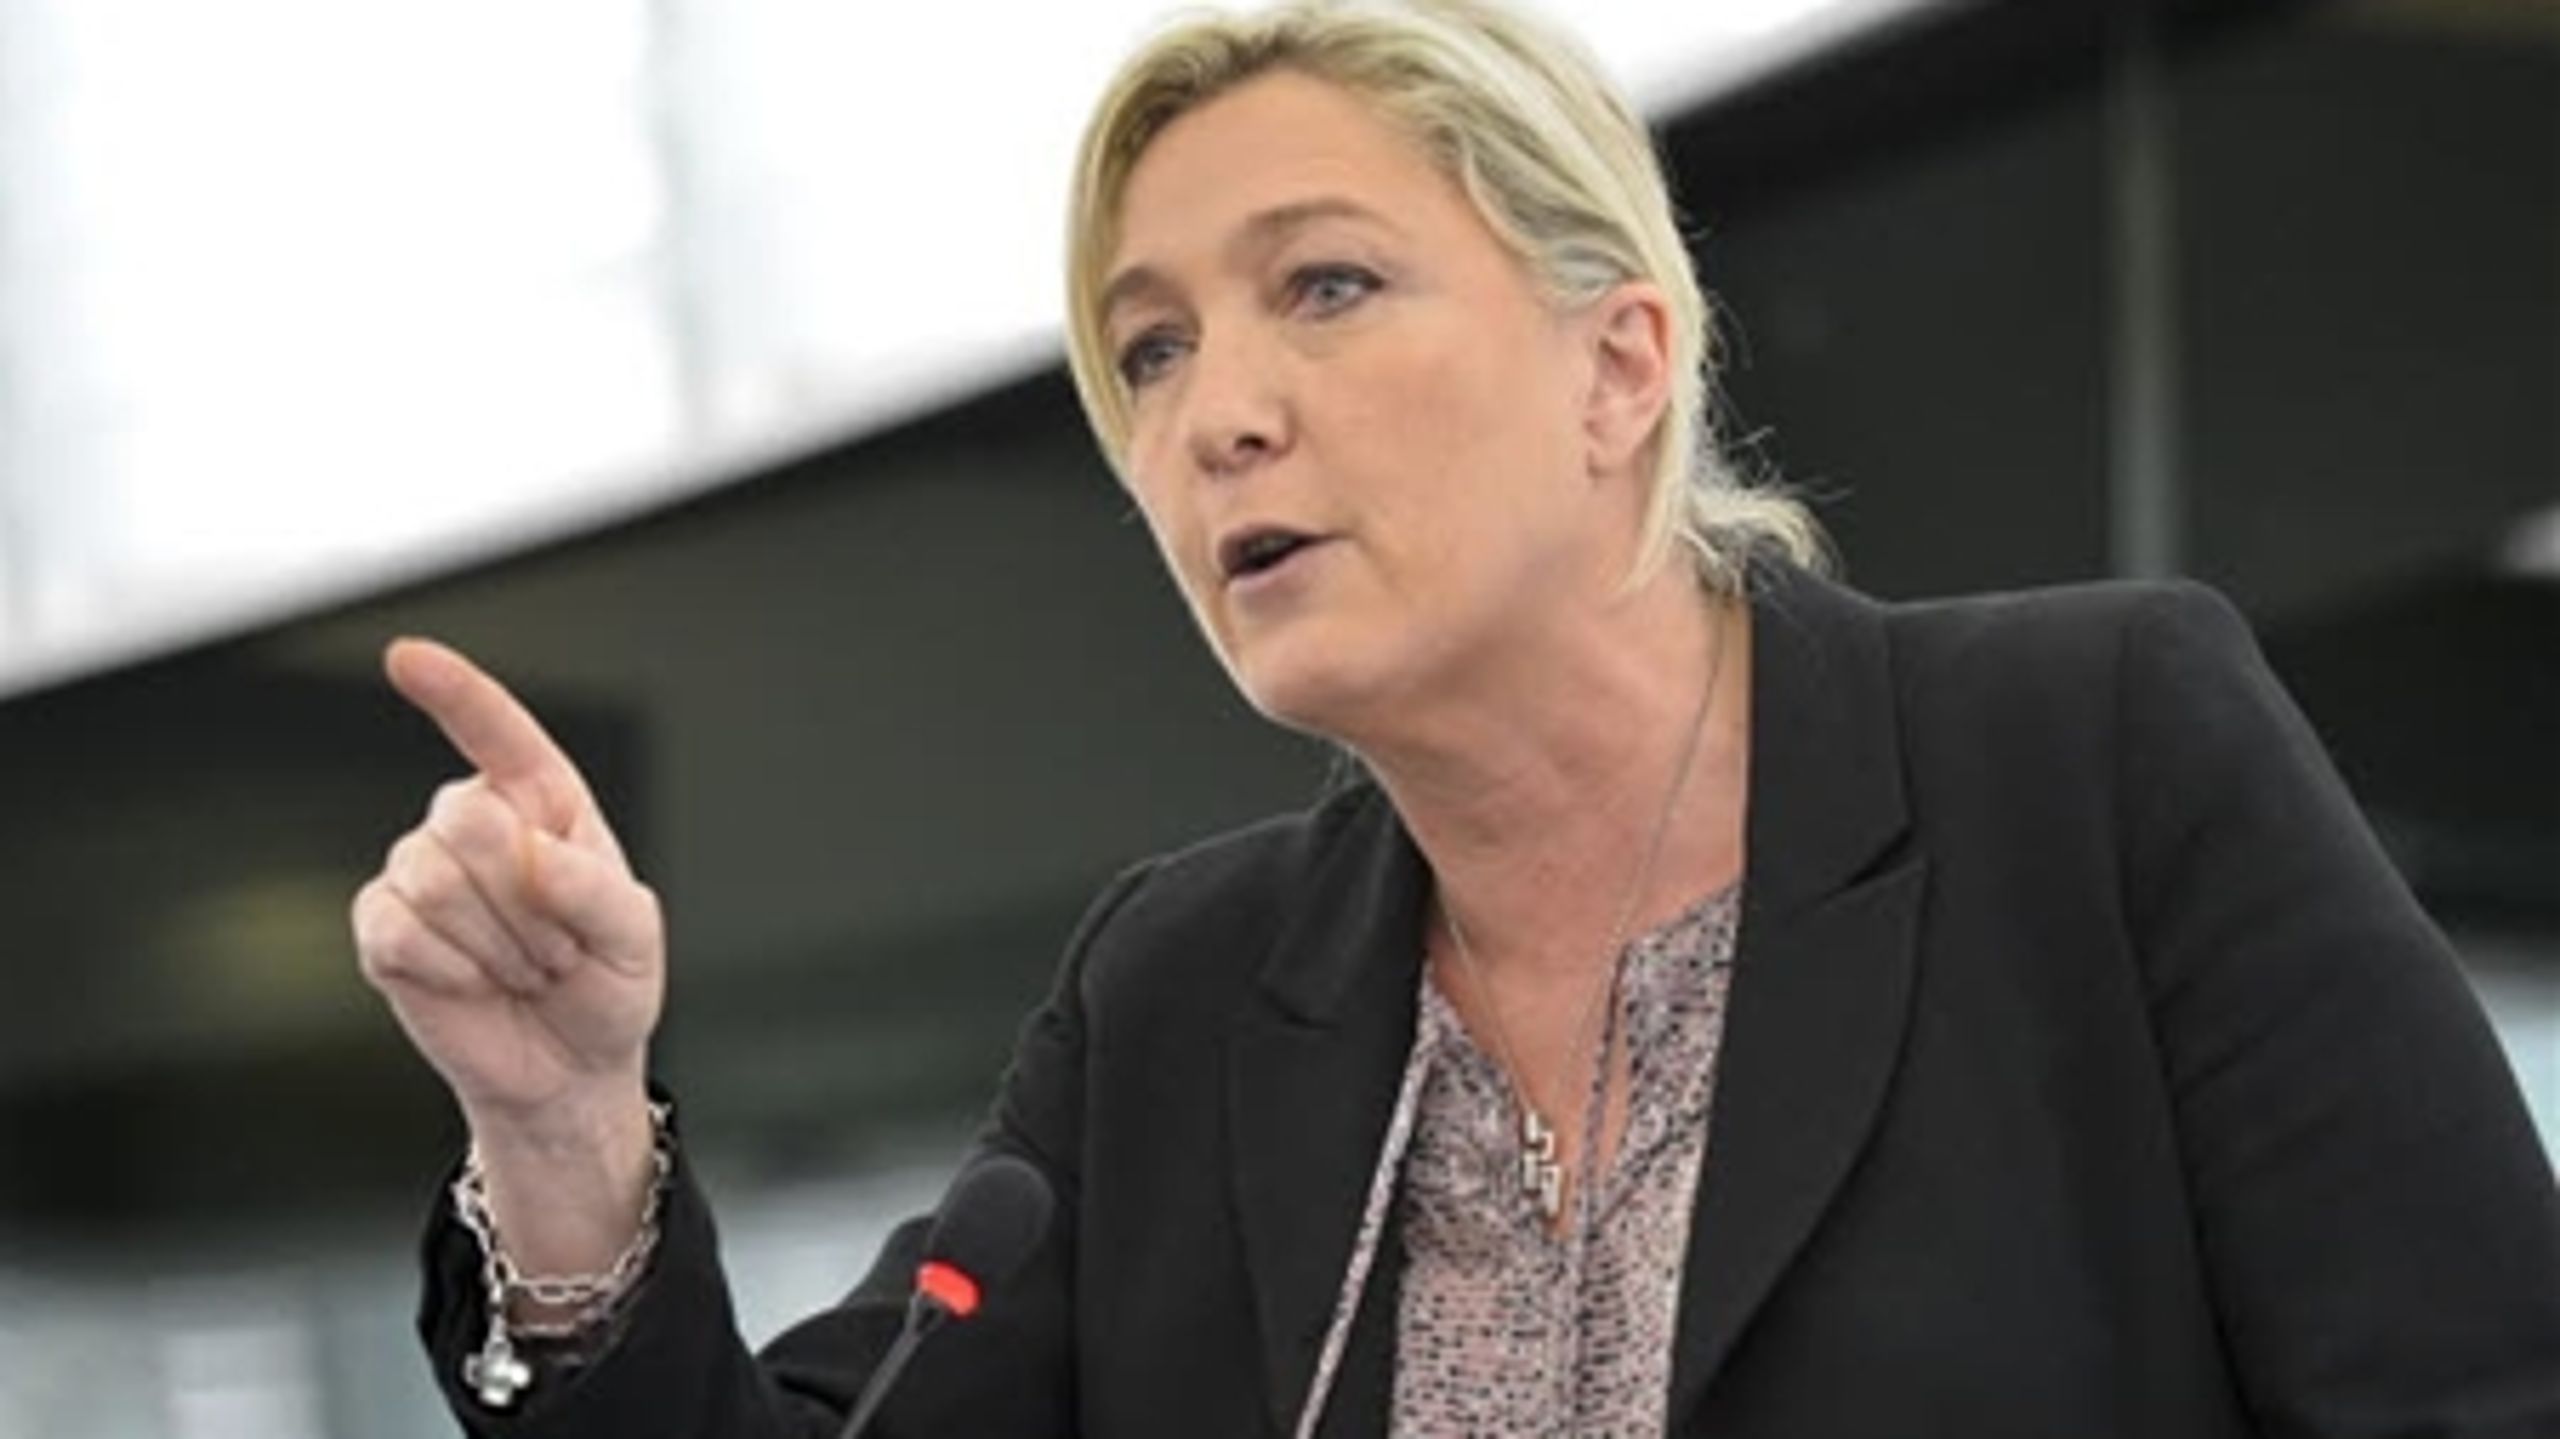 Marine Le Pens Front National var et af de EU-skeptiske partier, der fik massiv fremgang ved EU-valget.